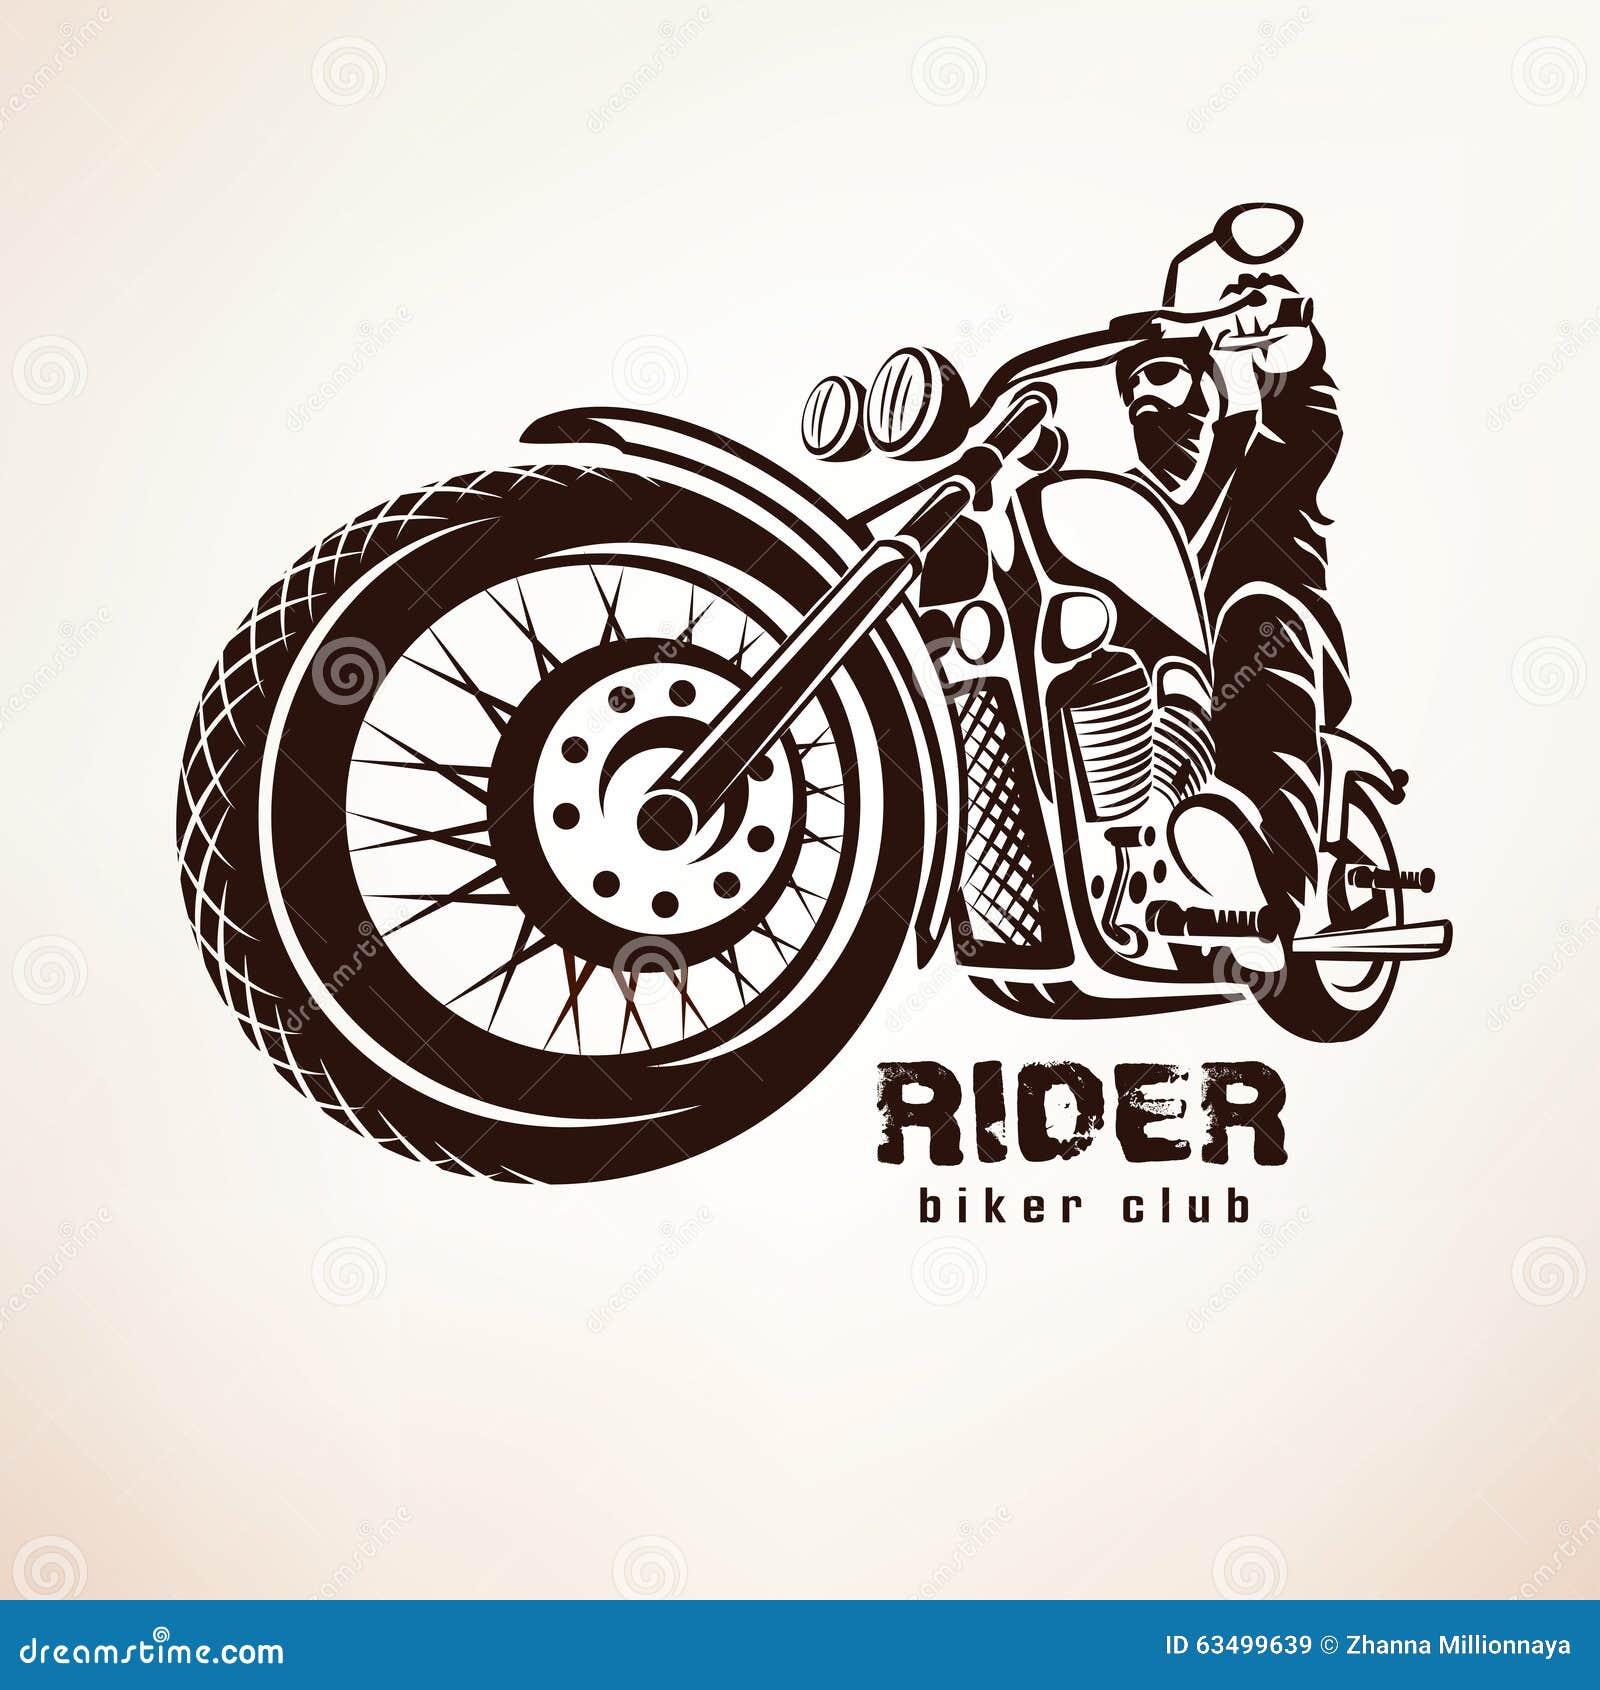 Biker, Motorcycle Grunge Vector Silhouette Stock Vector ...